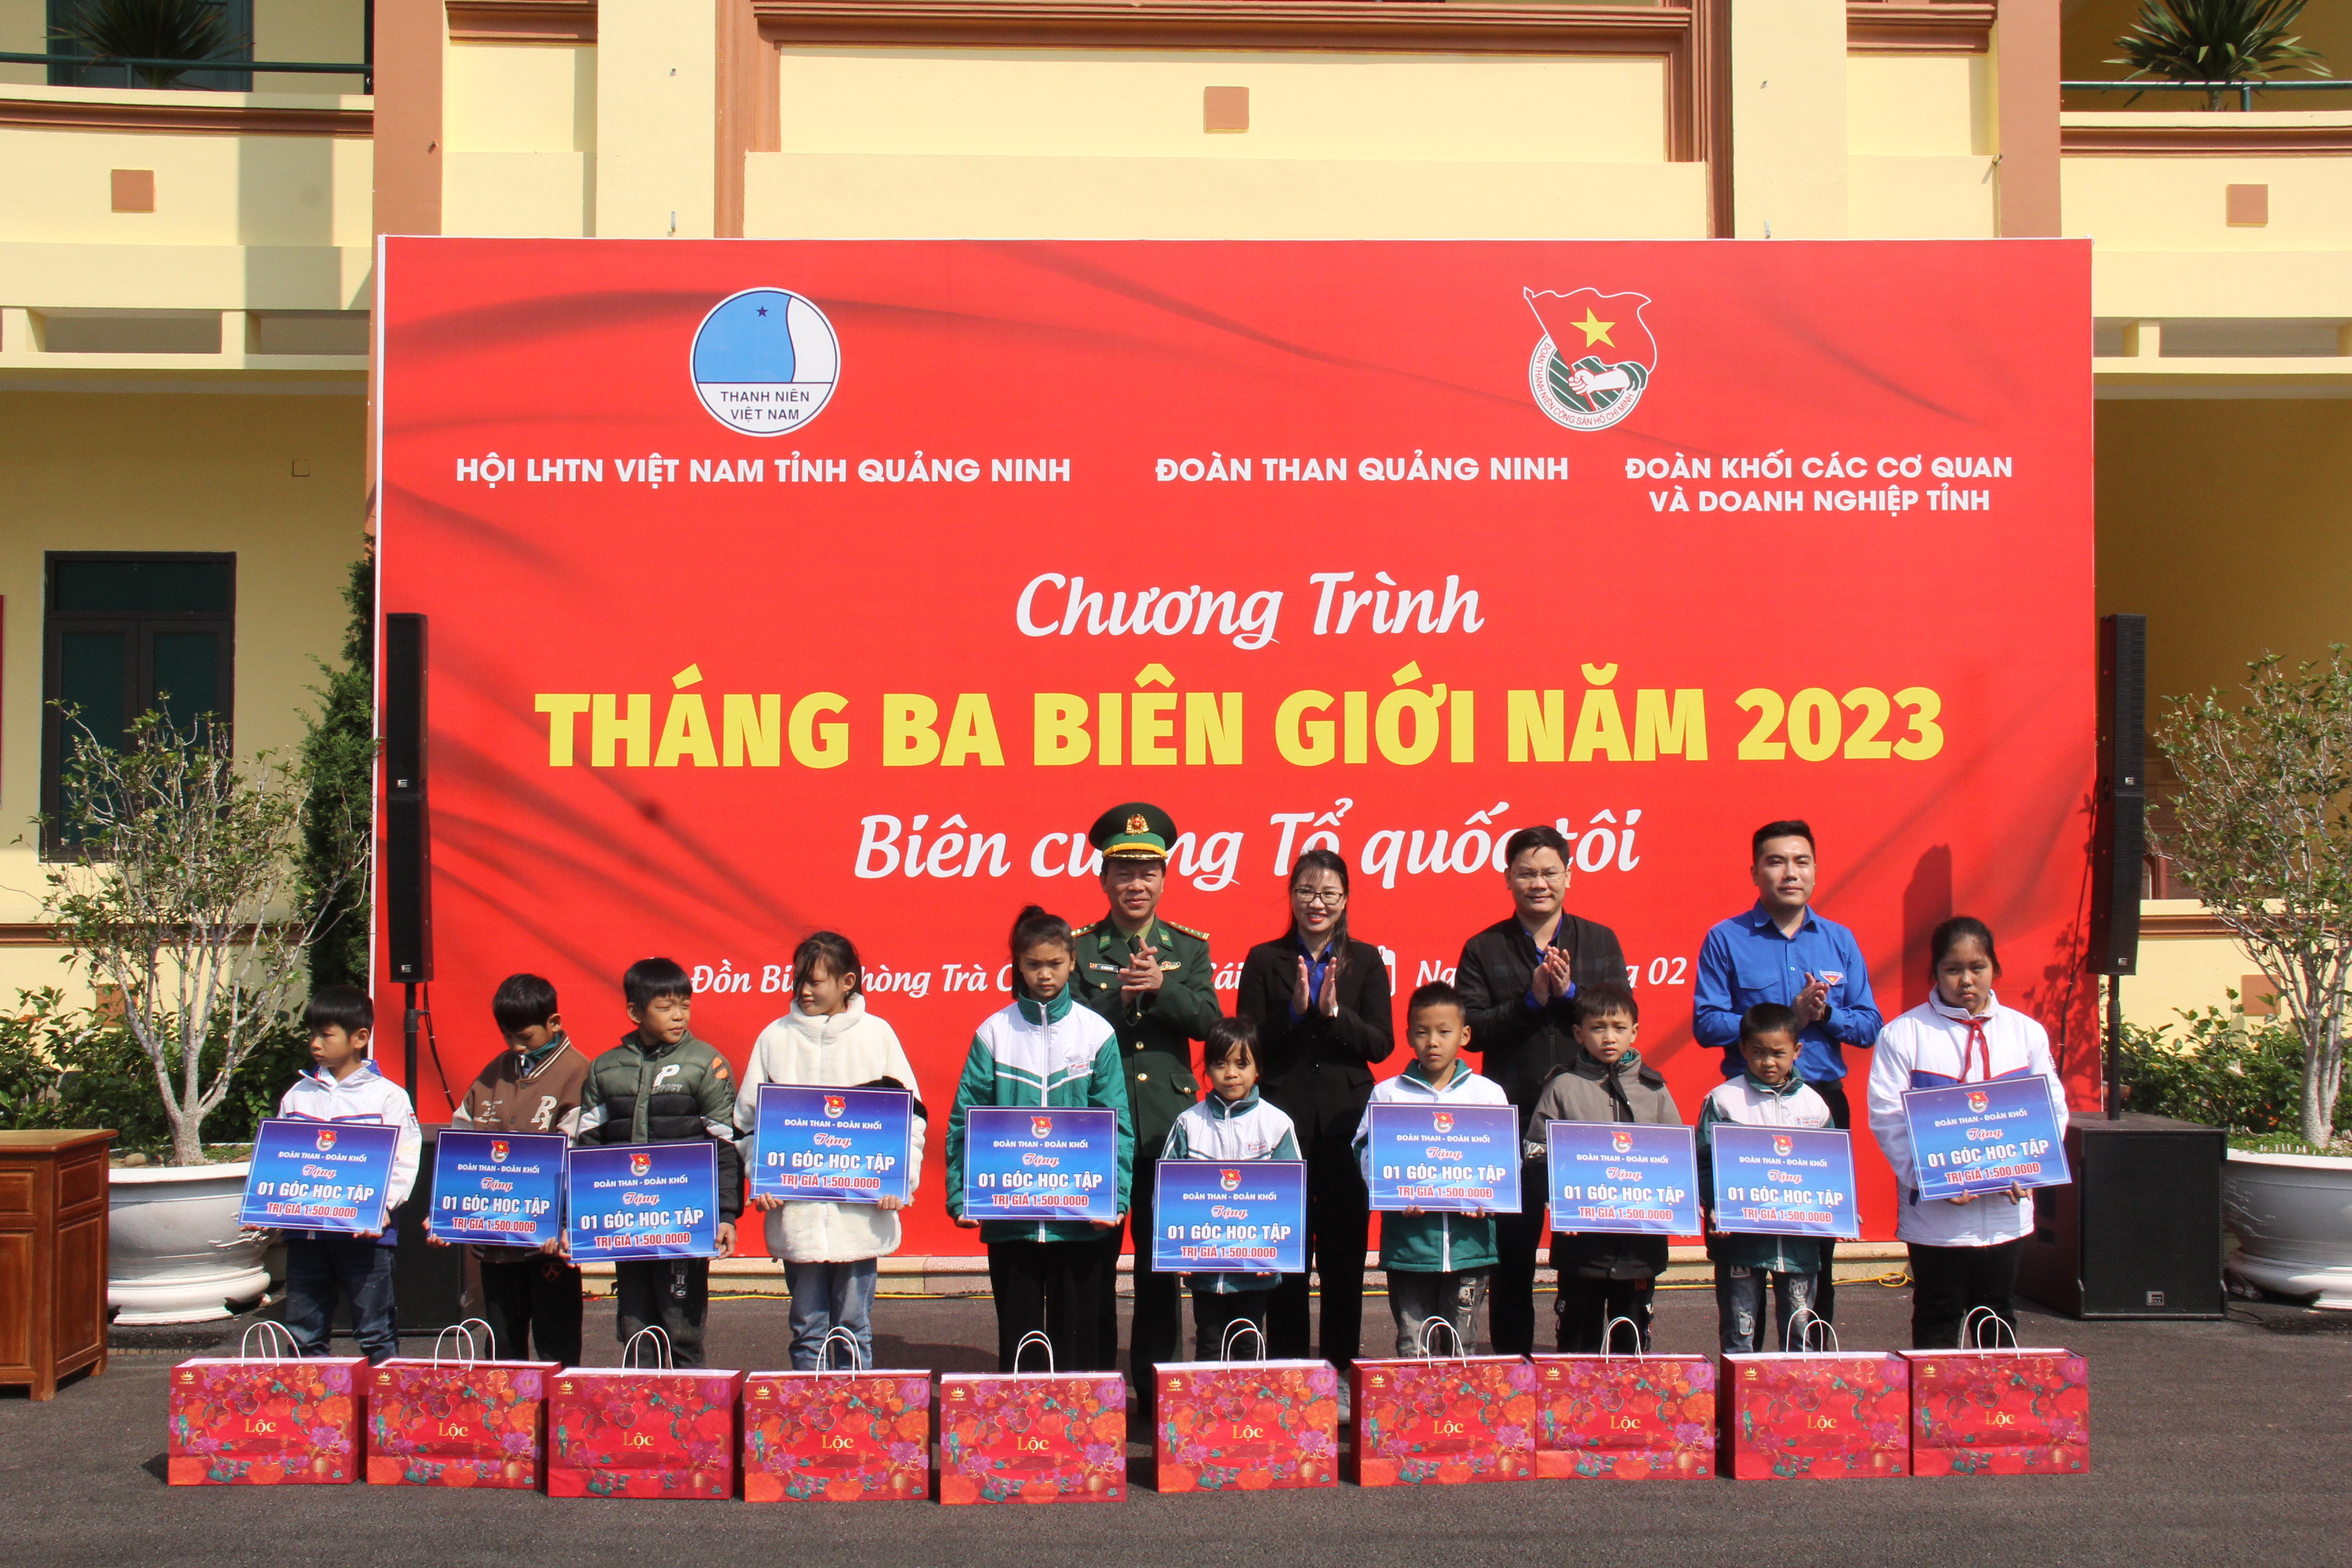 Đoàn Than Quảng Ninh: Nhiều hoạt động thiết thực, ý nghĩa trong chương trình “Tháng Ba biên giới”